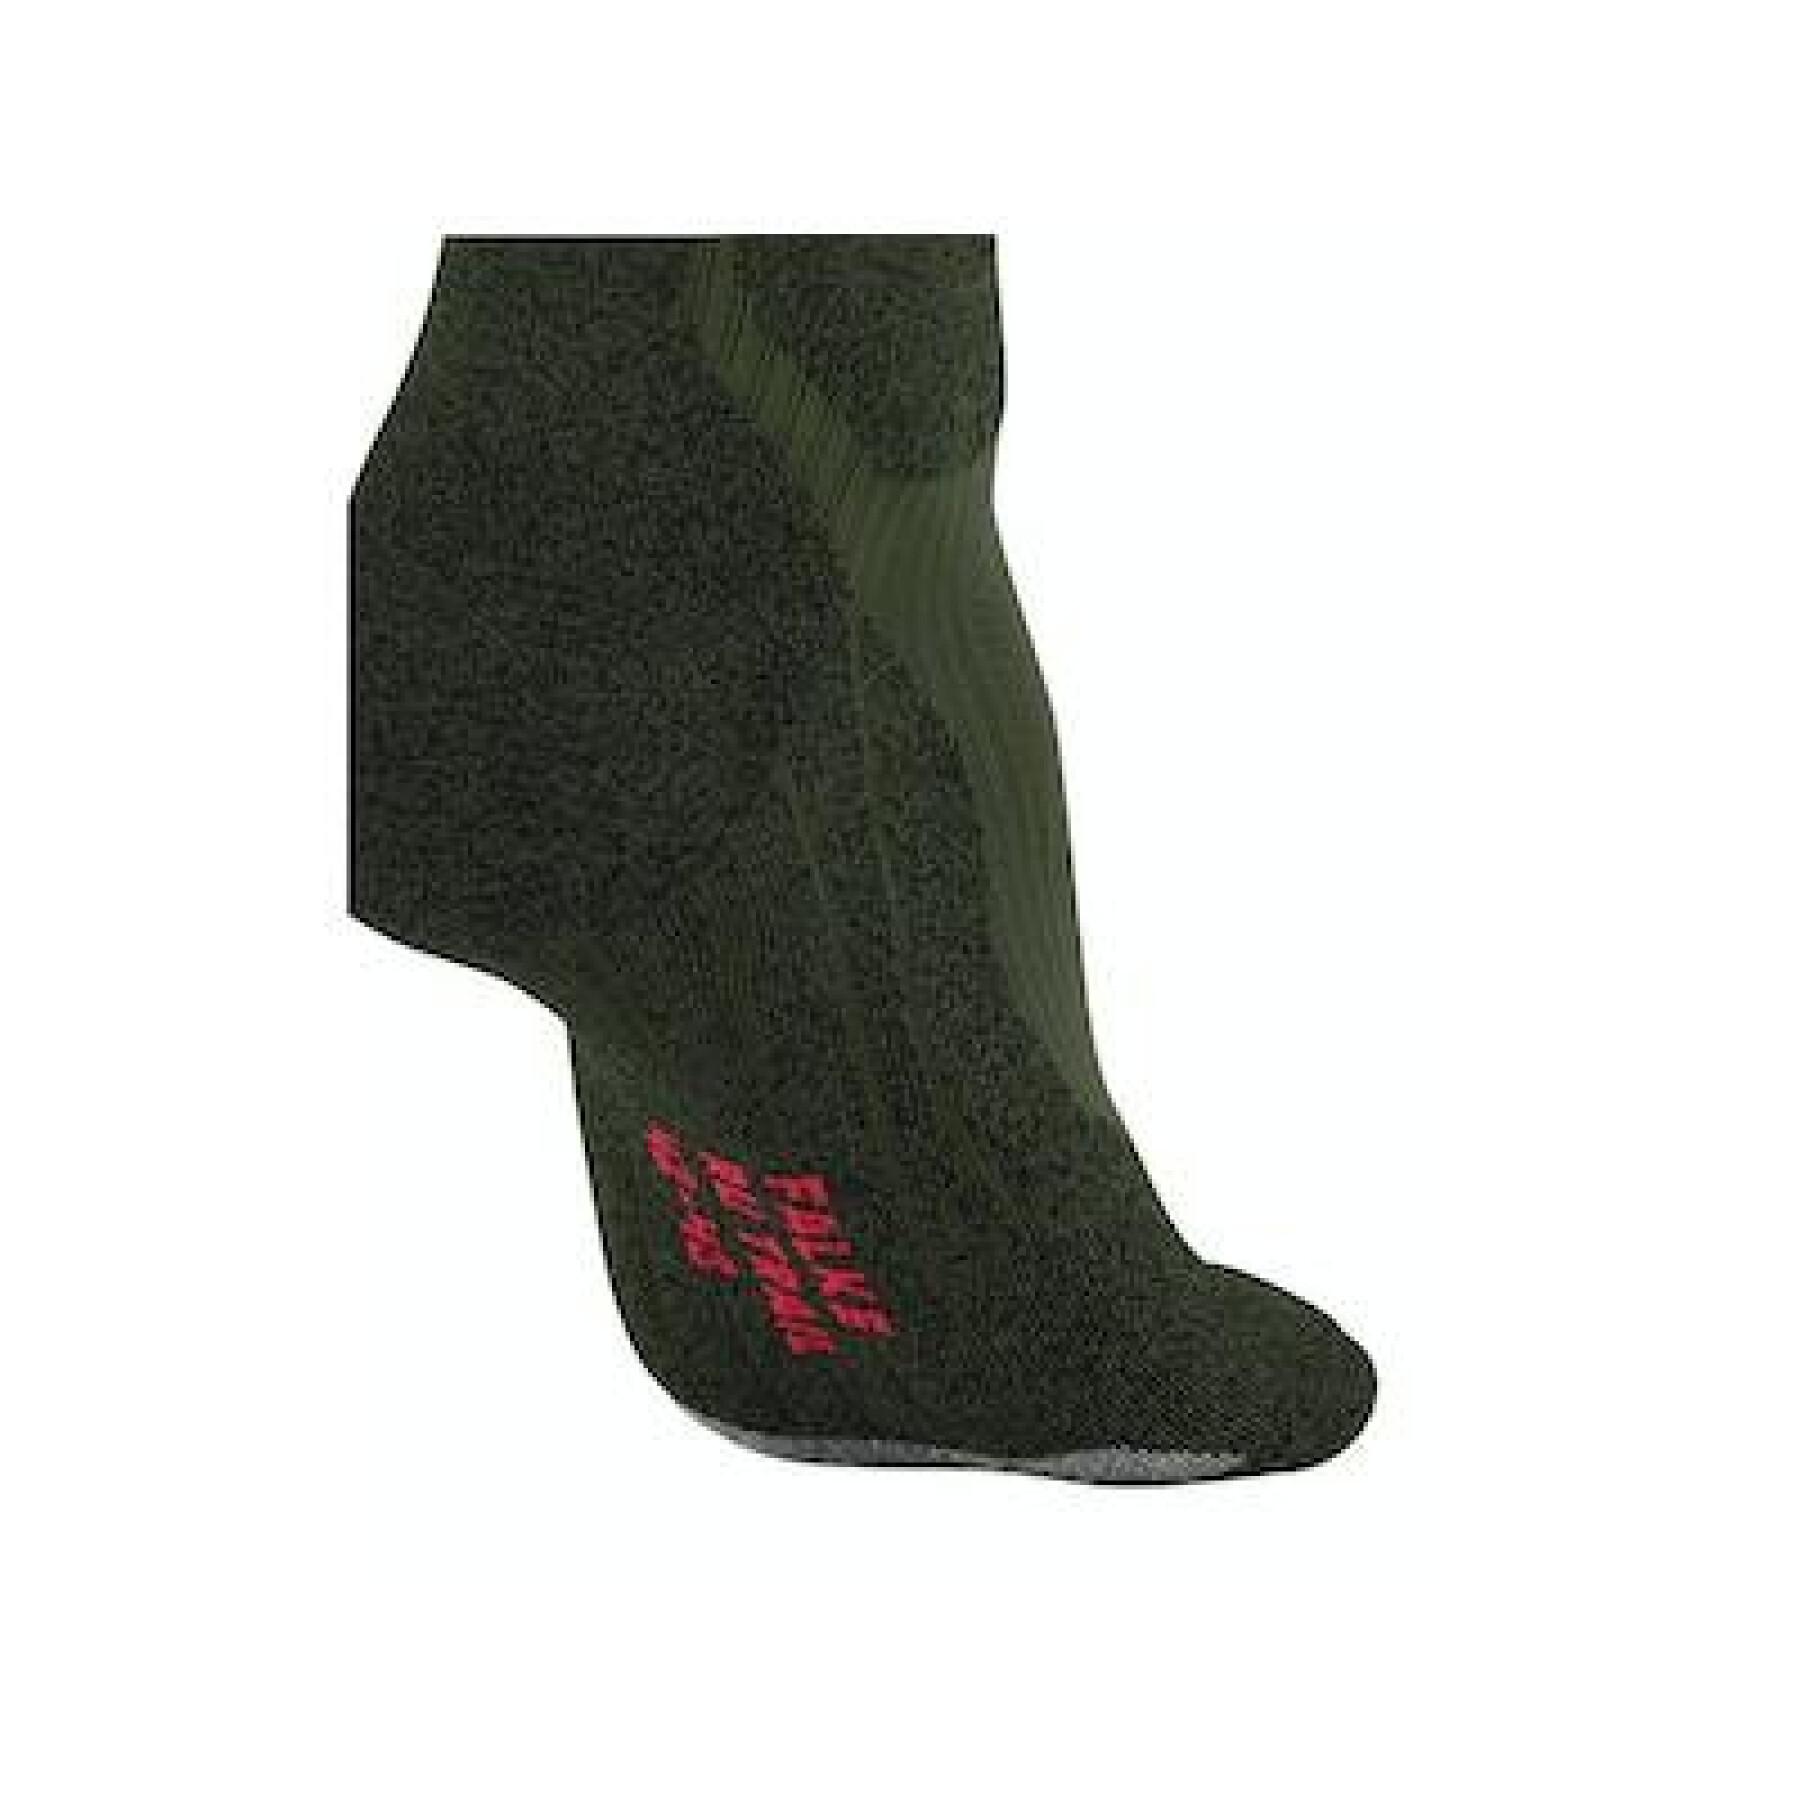 Socks Falke RU Trail Grip - Socks - Men's wear - Slocog wear